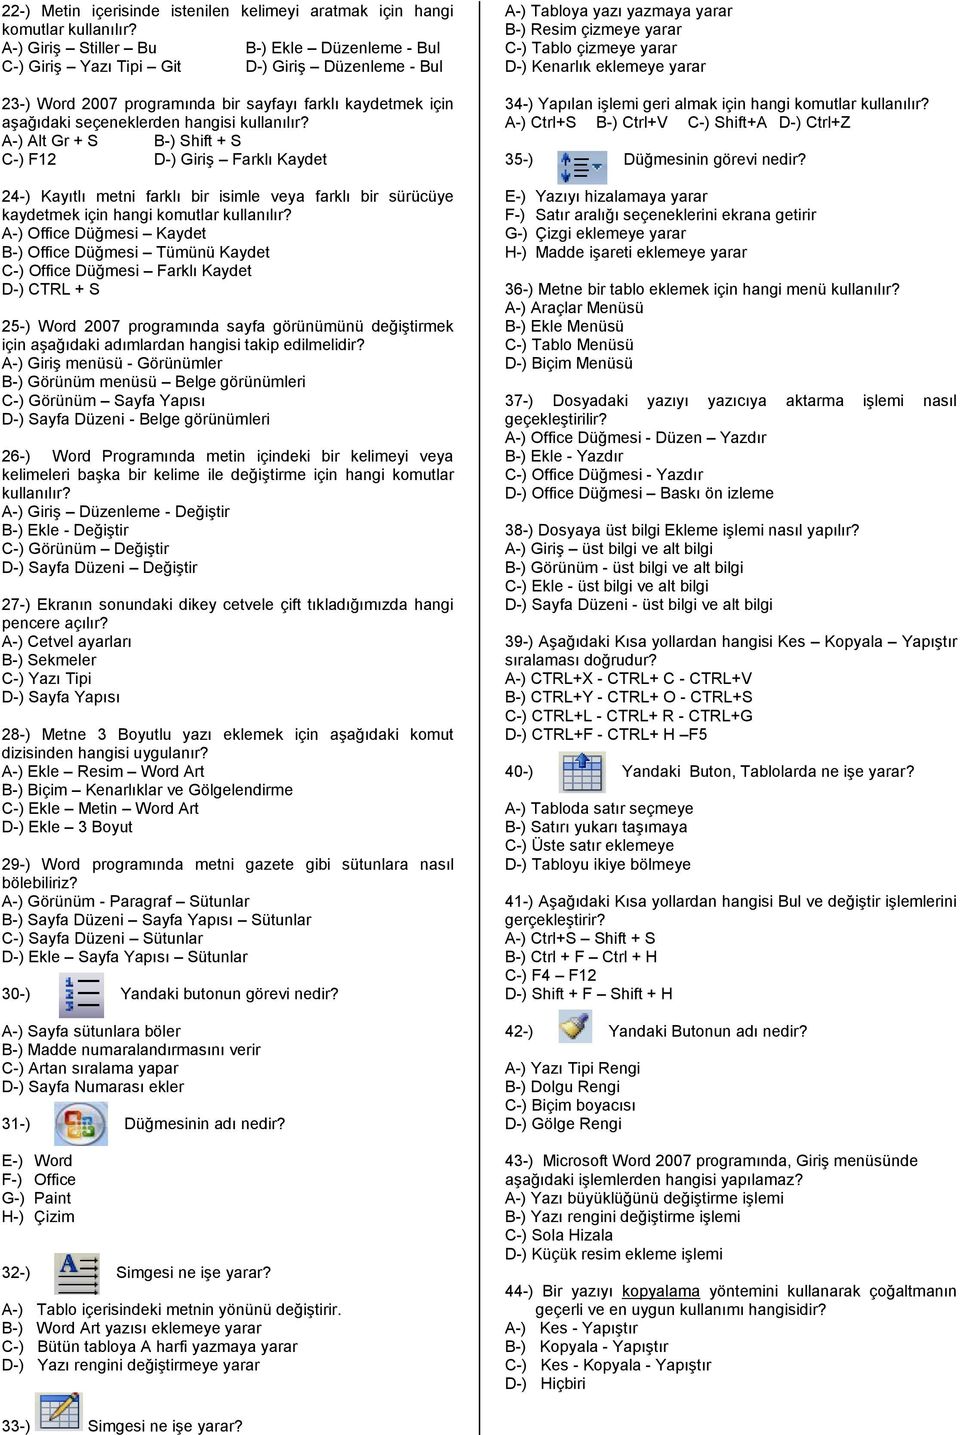 hangi komutlar A-) Office Düğmesi Kaydet B-) Office Düğmesi Tümünü Kaydet C-) Office Düğmesi Farklı Kaydet D-) CTRL + S 25-) Word 2007 programında sayfa görünümünü değiştirmek için aşağıdaki